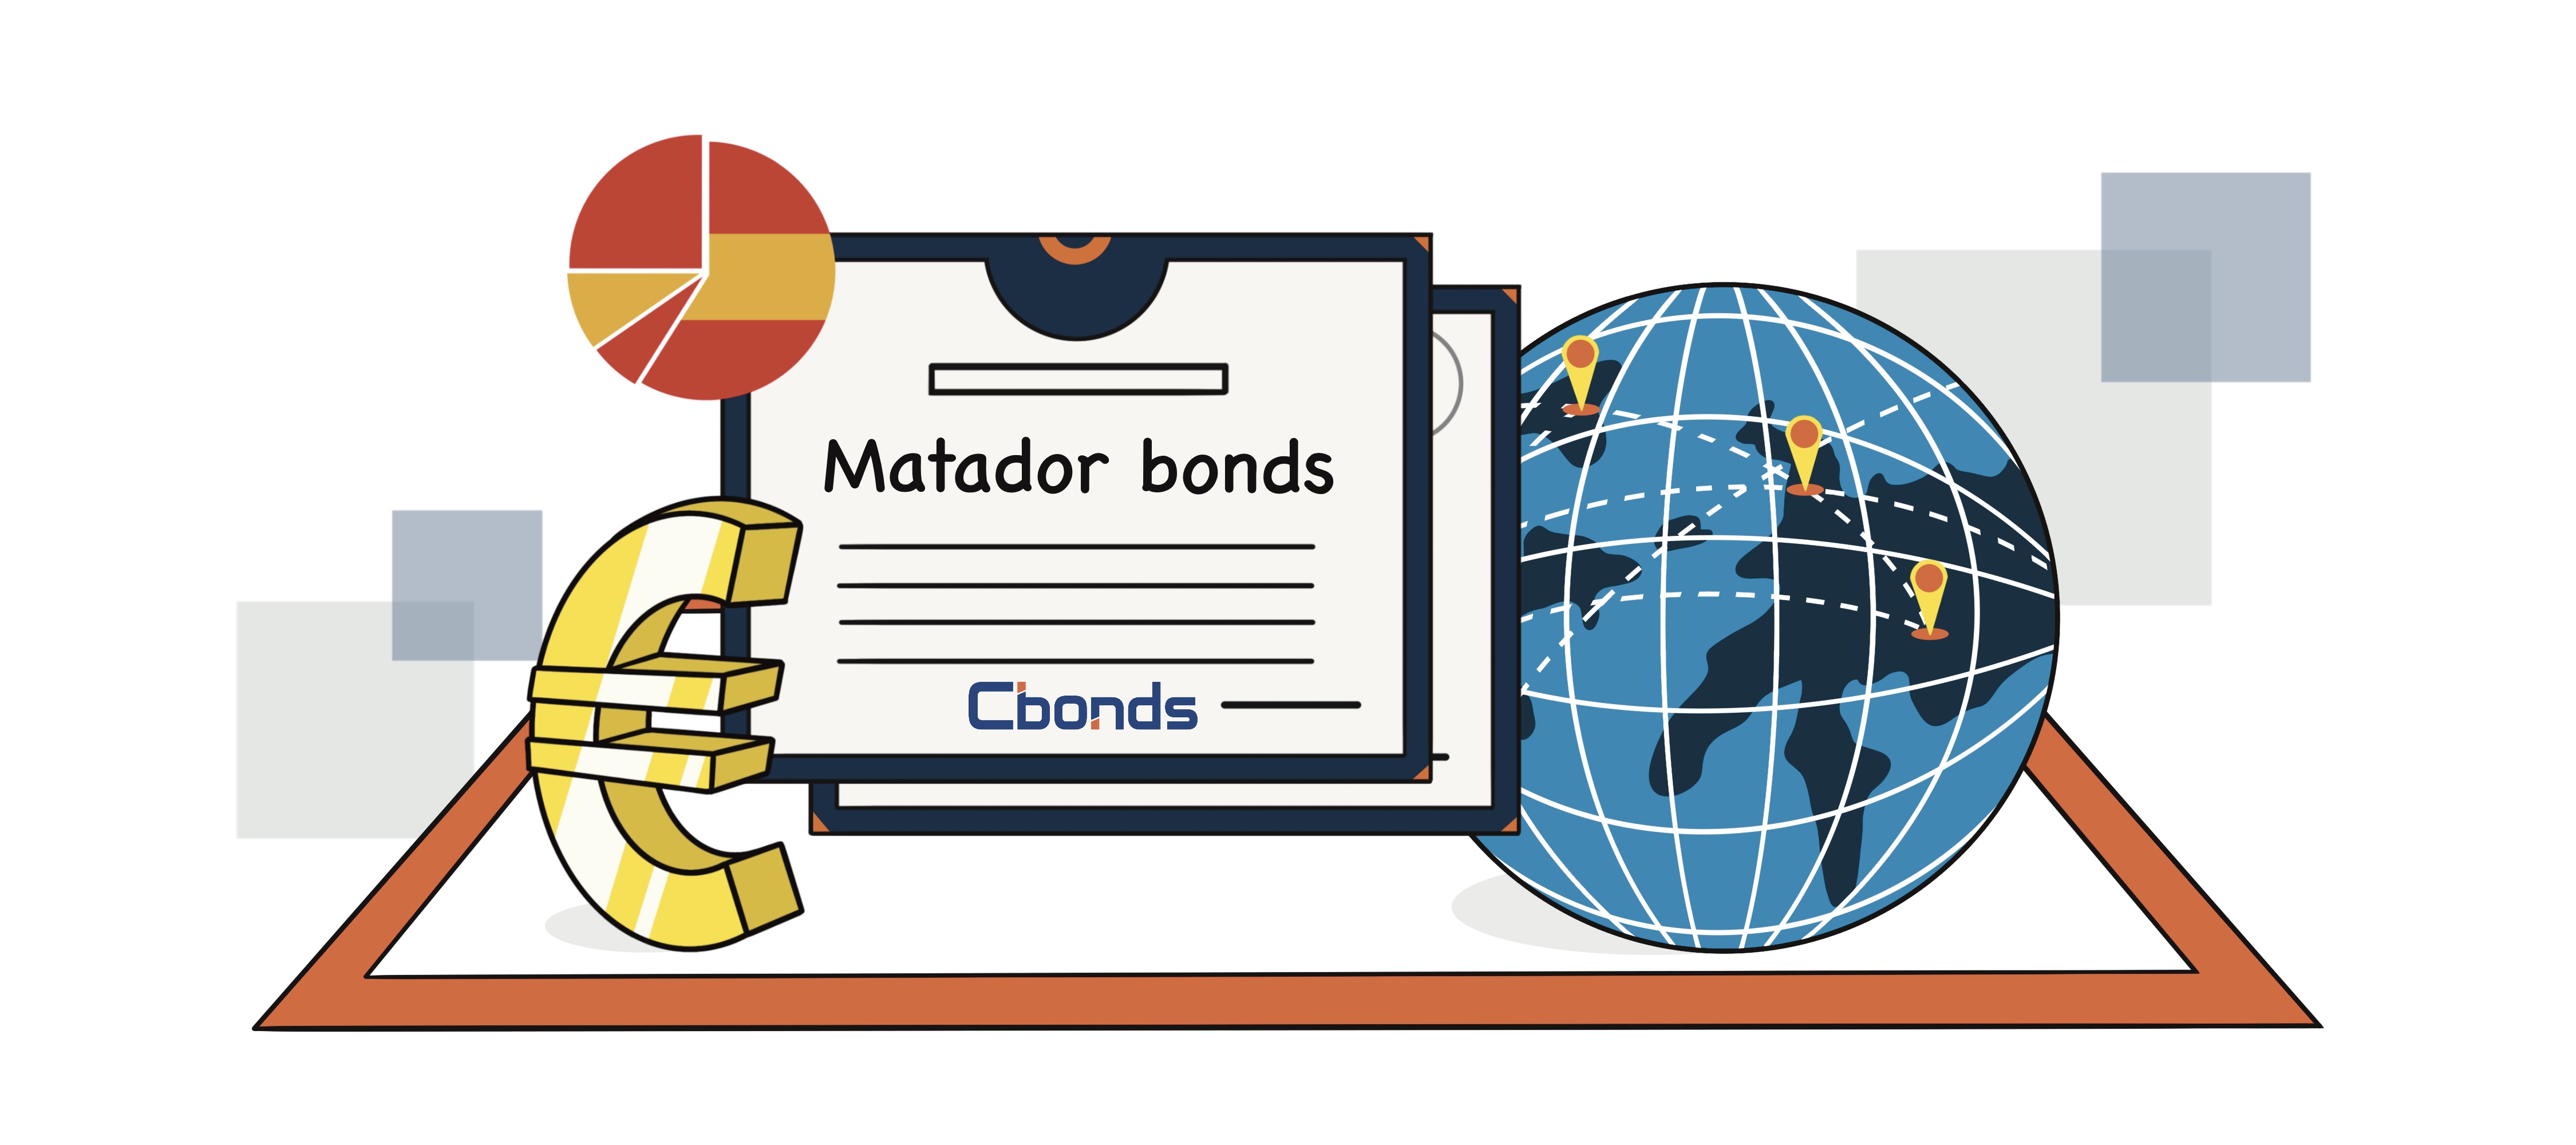 Matador bonds